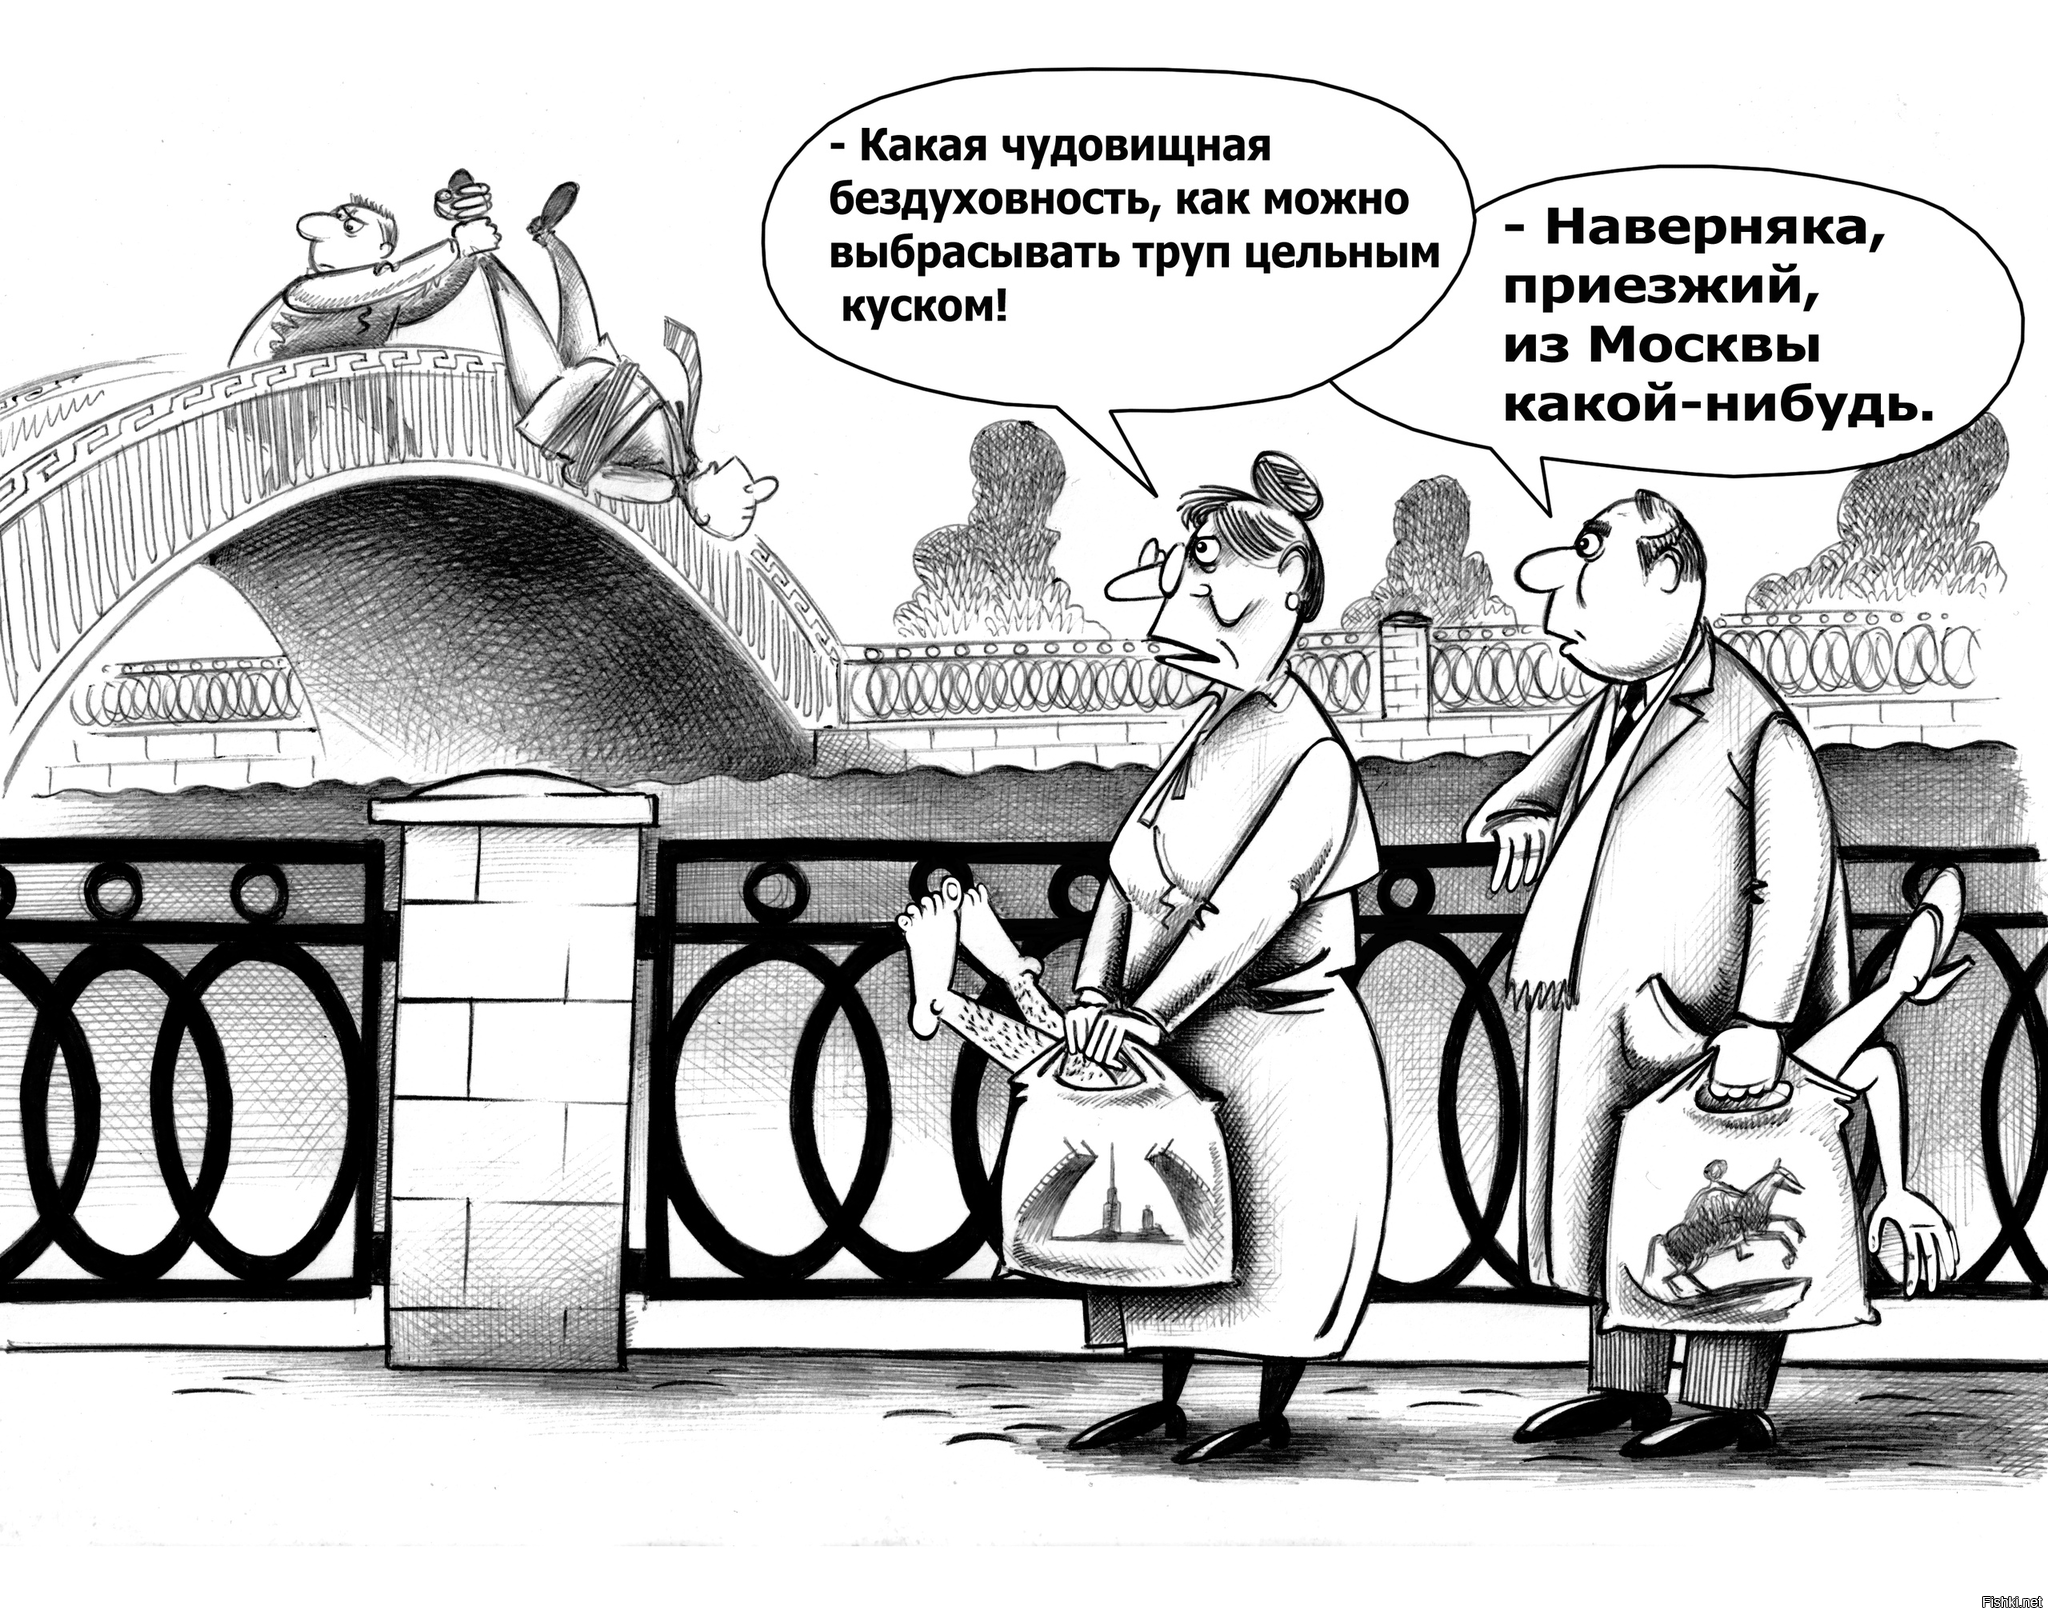 Что жители санкт петербурга называют поребриком. Шутки про Петербург и расчлененку. Карикатура. Анекдоты про Питер. Современные карикатуры.